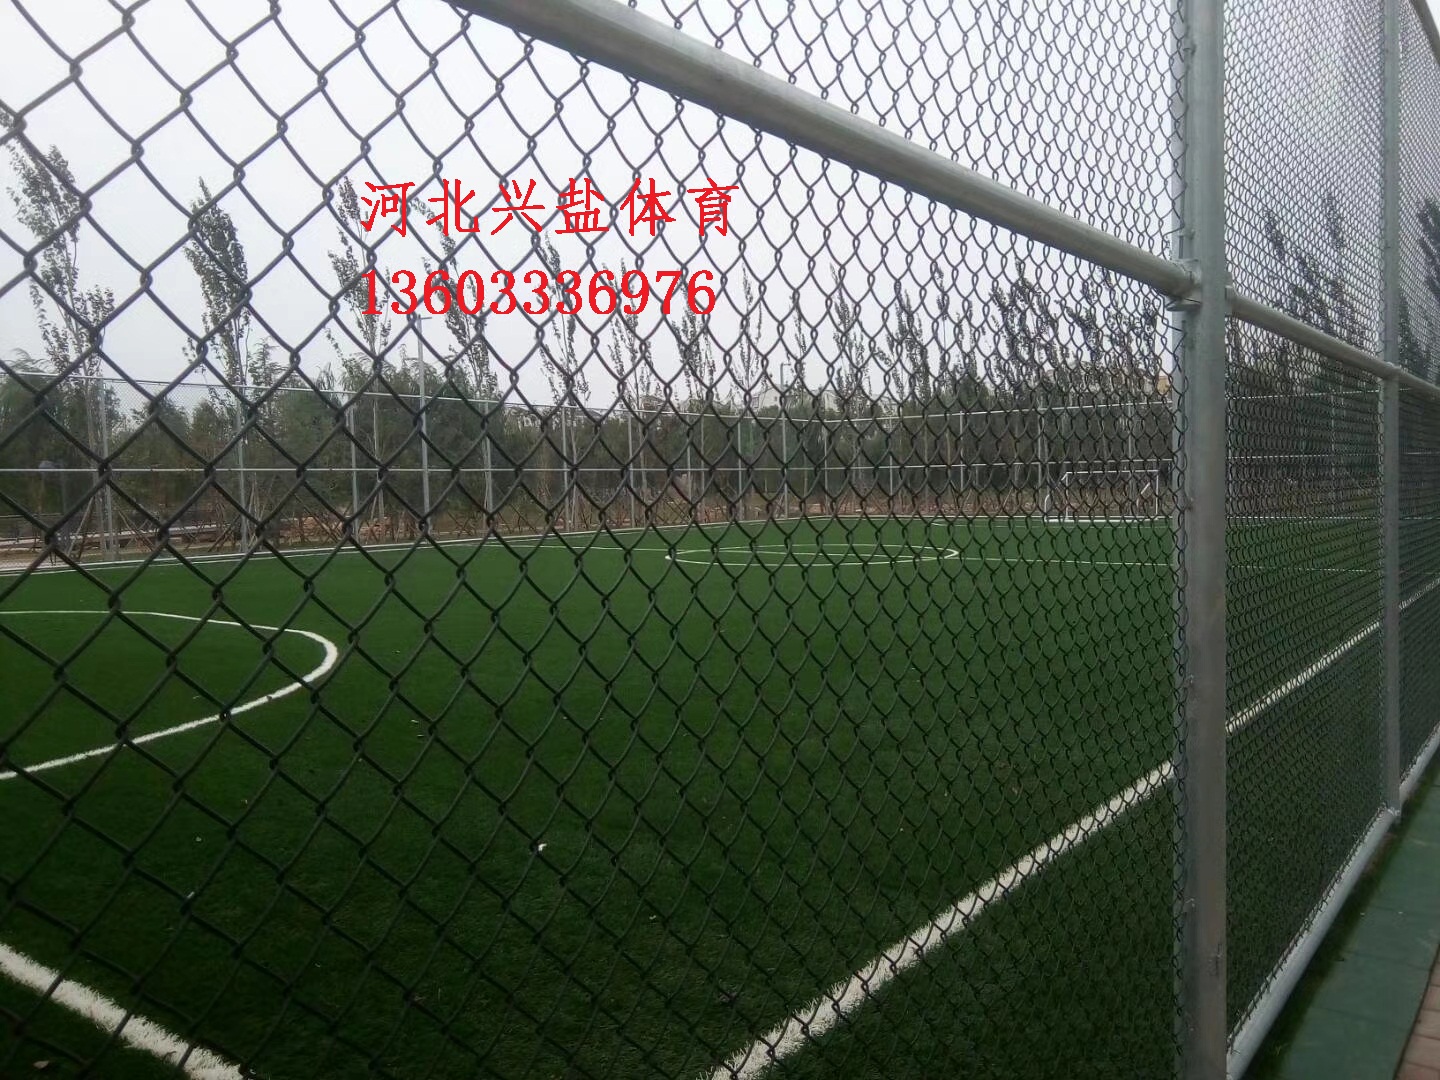 足球场围网生产厂家 健身器材 大型围网图片